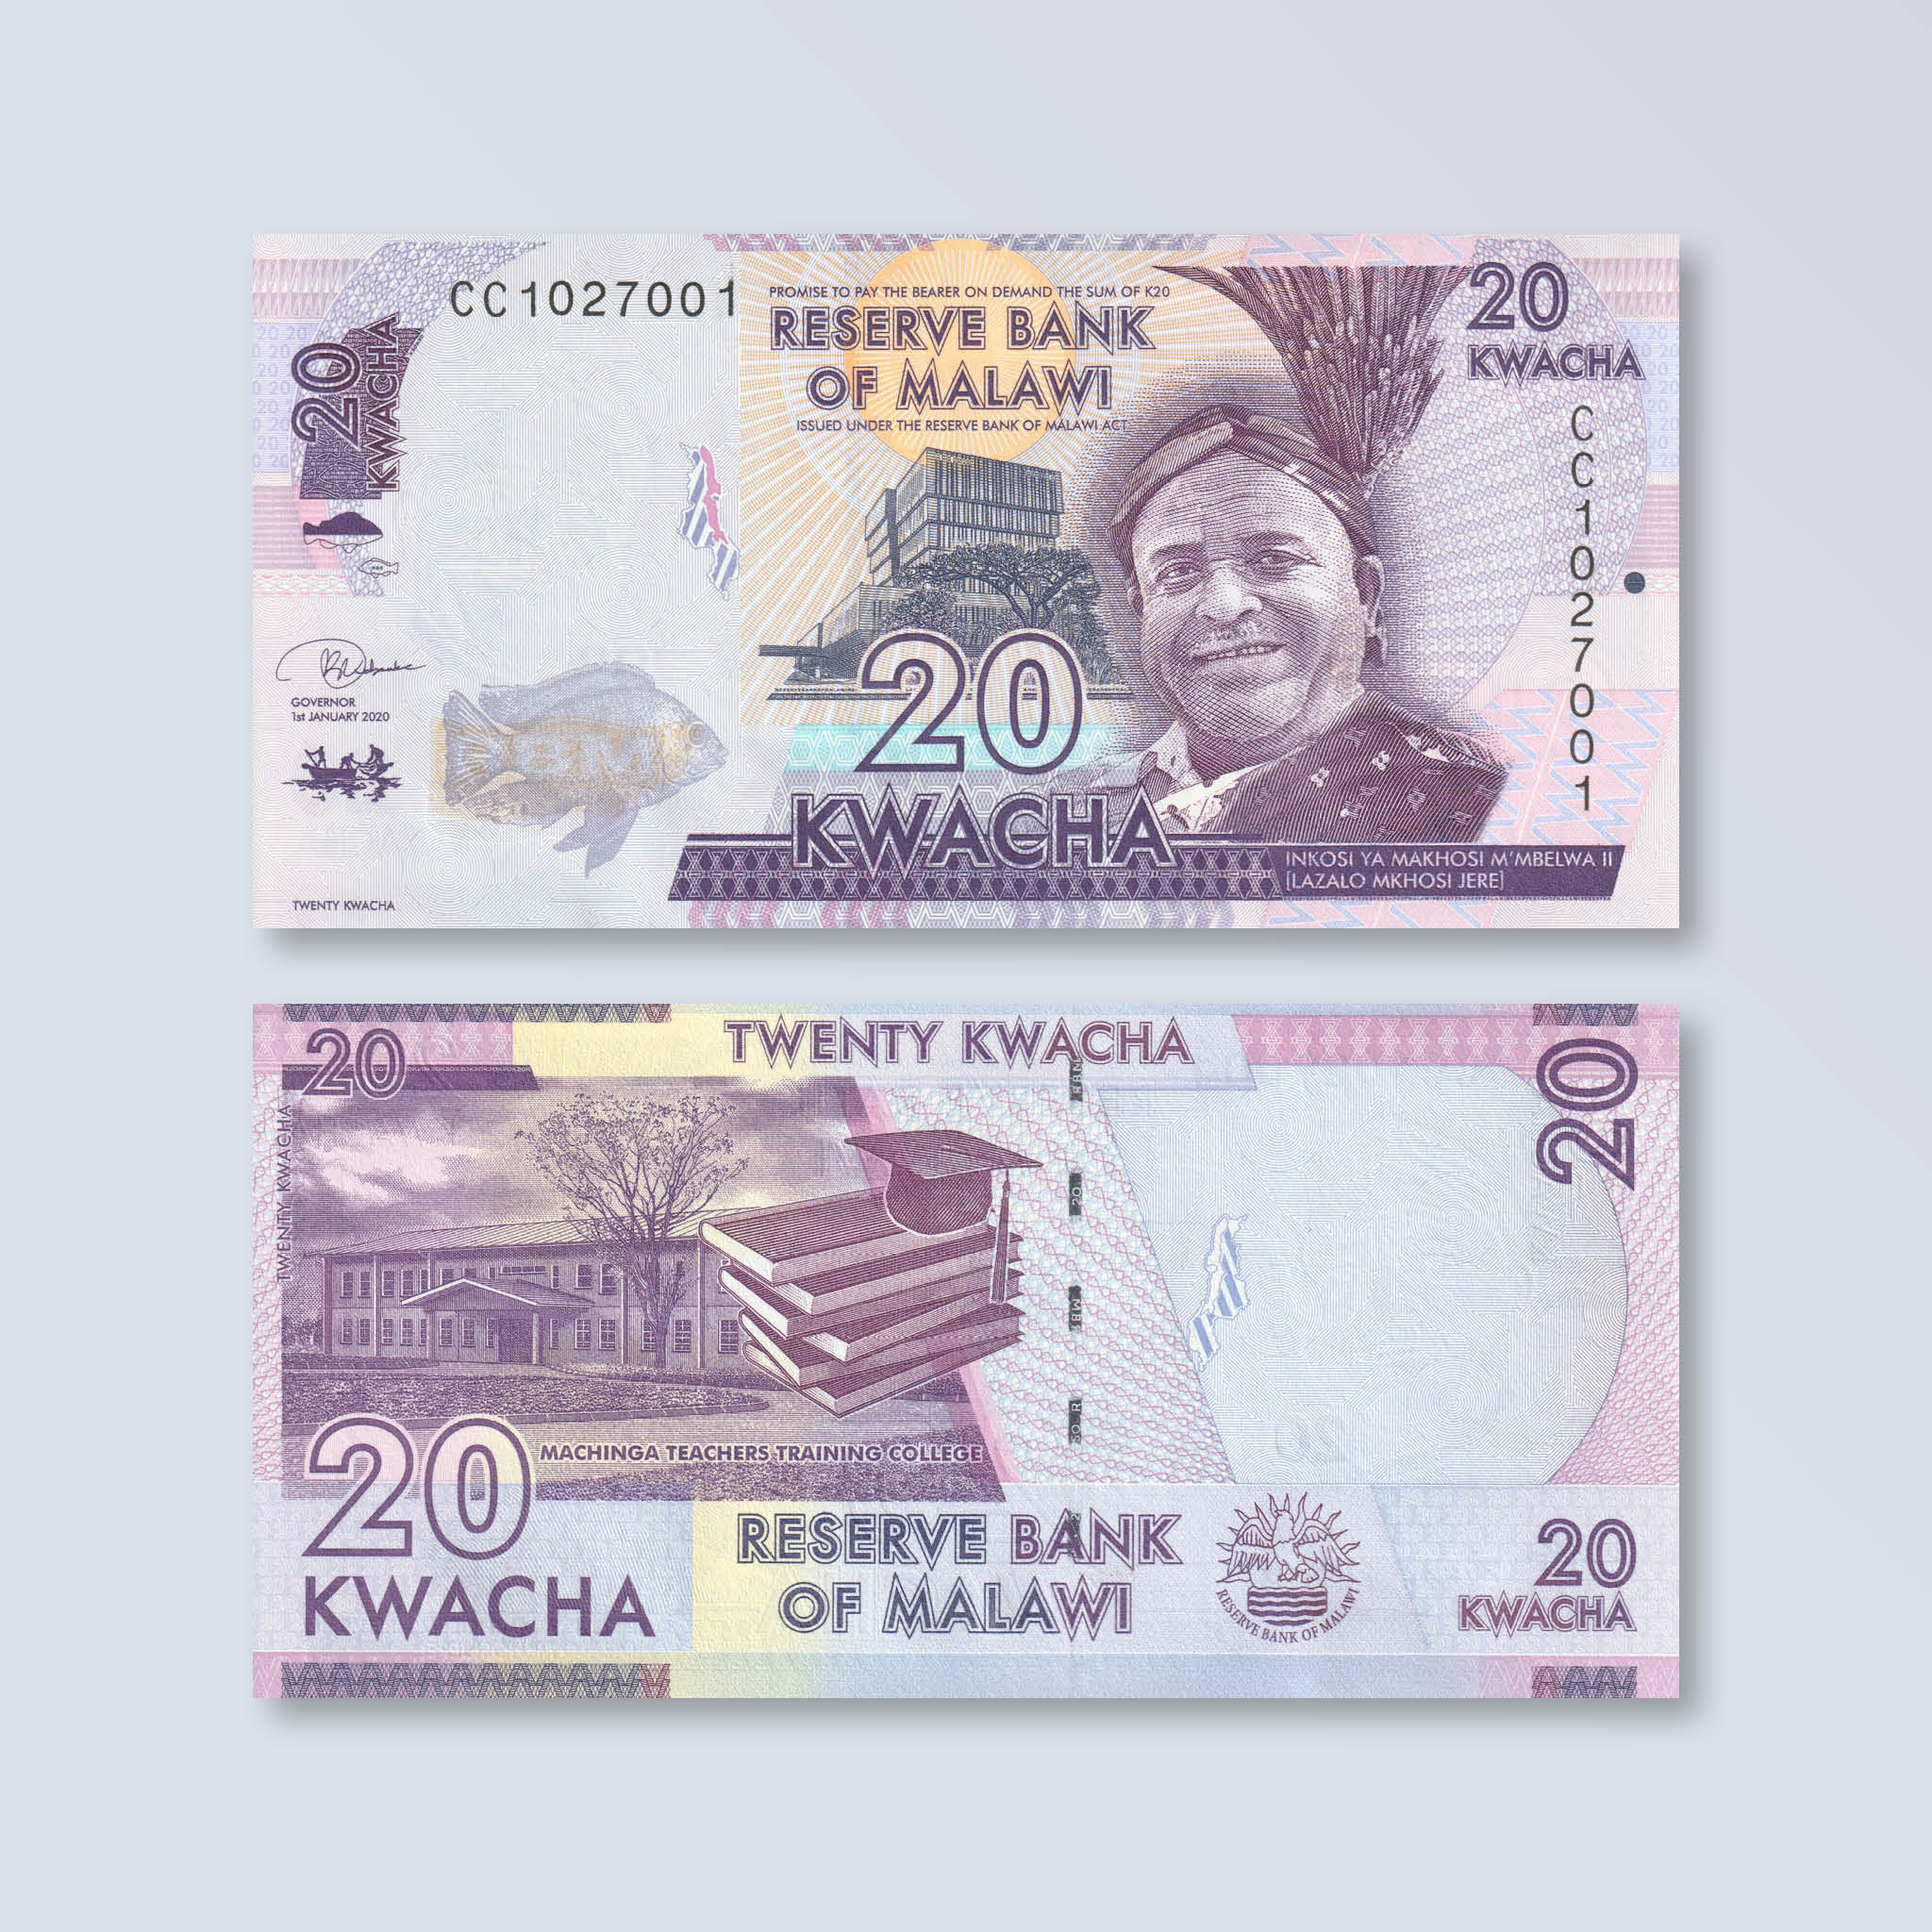 Malawi 20 Kwacha, 2020, B157f, P63, UNC - Robert's World Money - World Banknotes